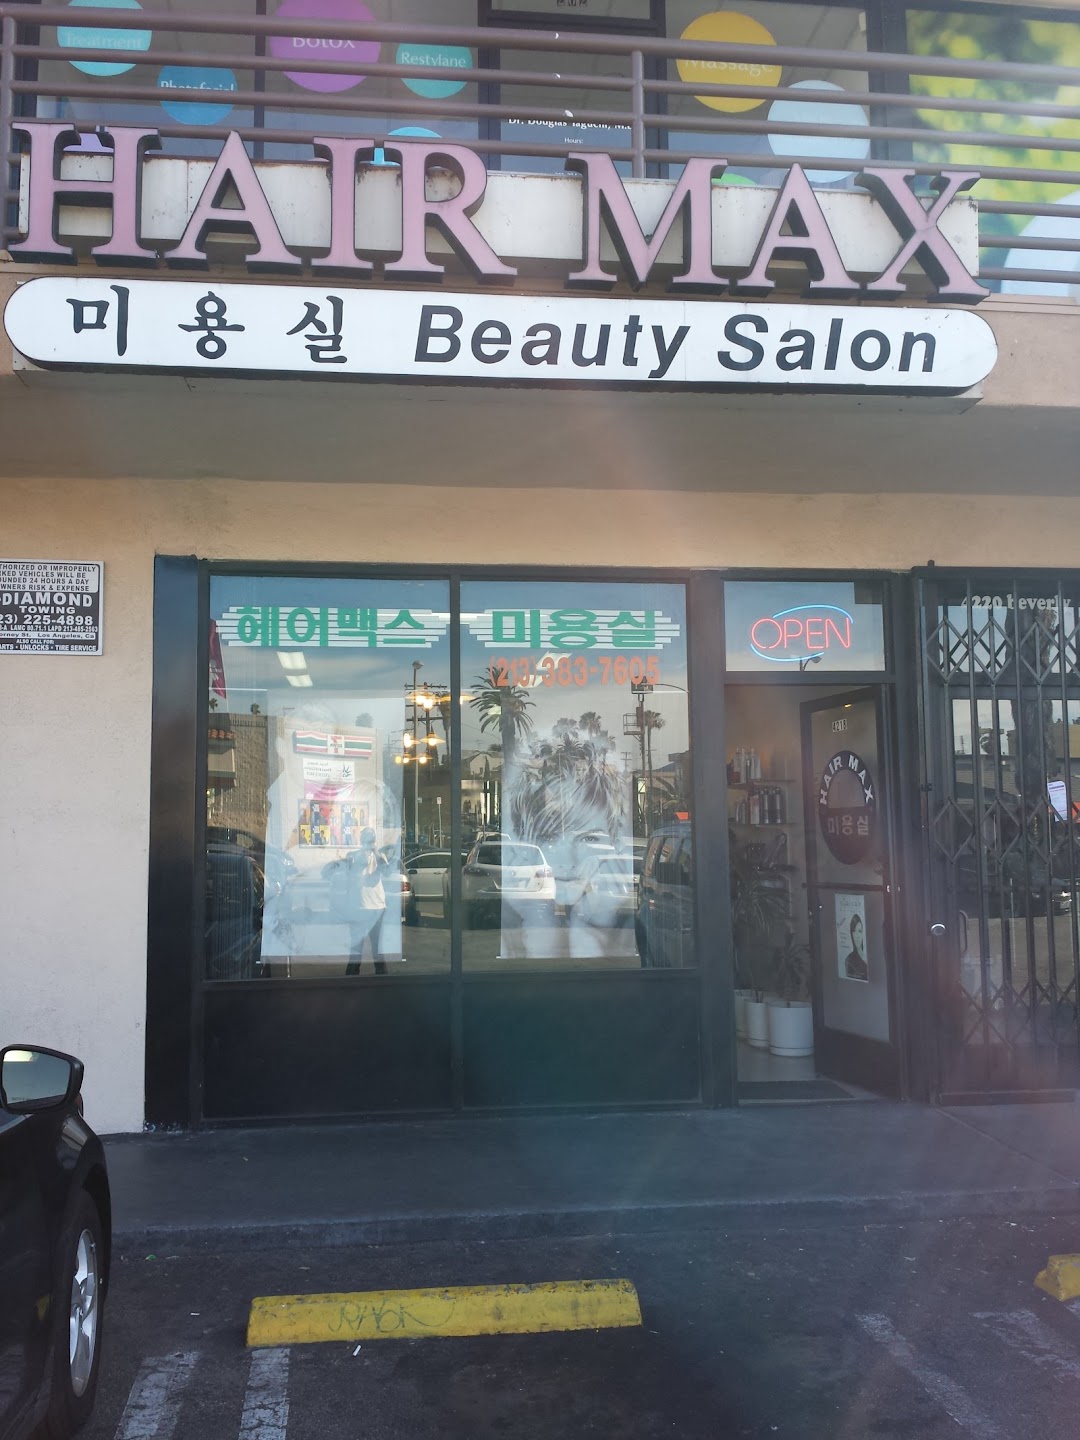 Hair Max Beauty Salon